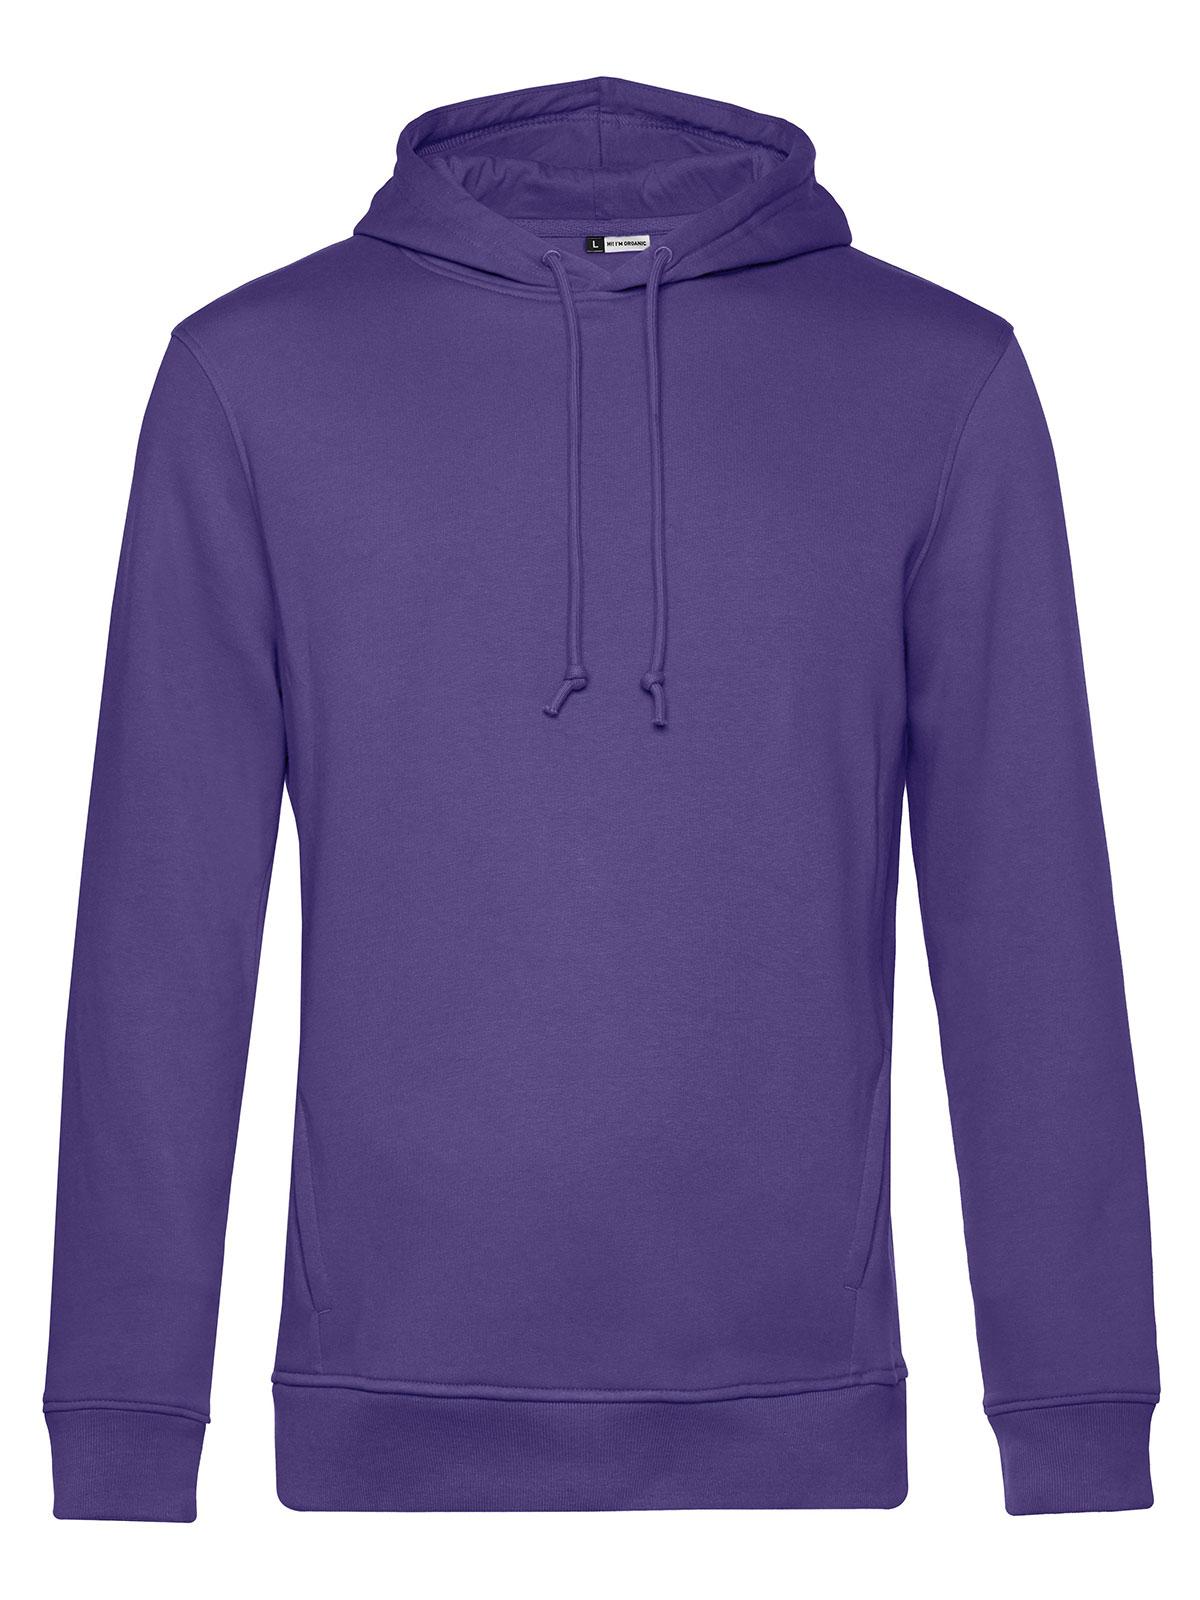 inspire-hooded-radiant-purple.webp